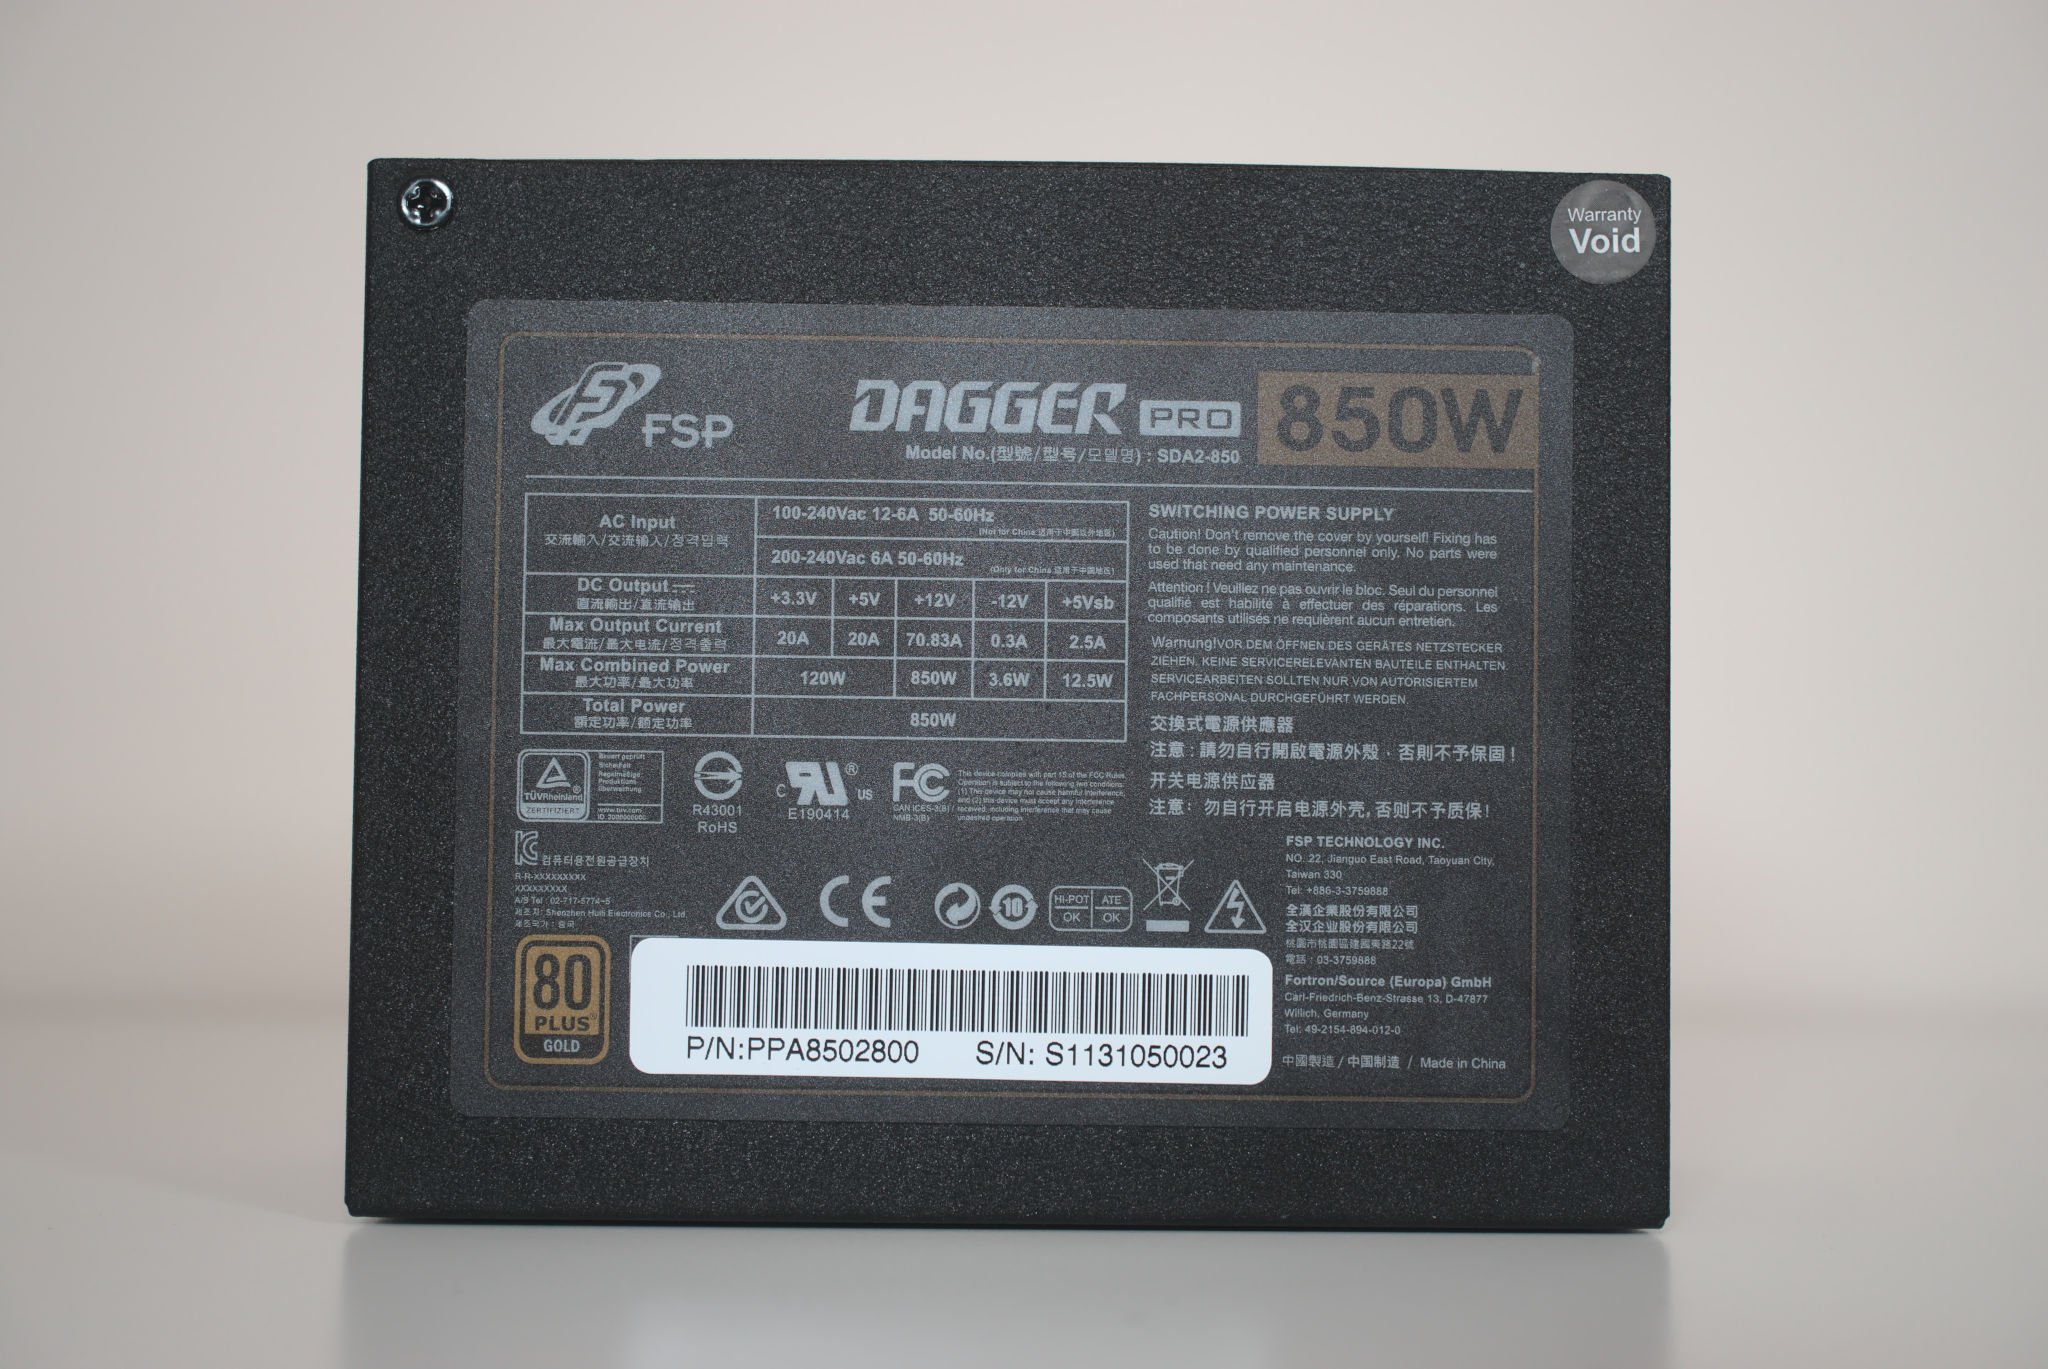 FSP Dagger Pro 850W